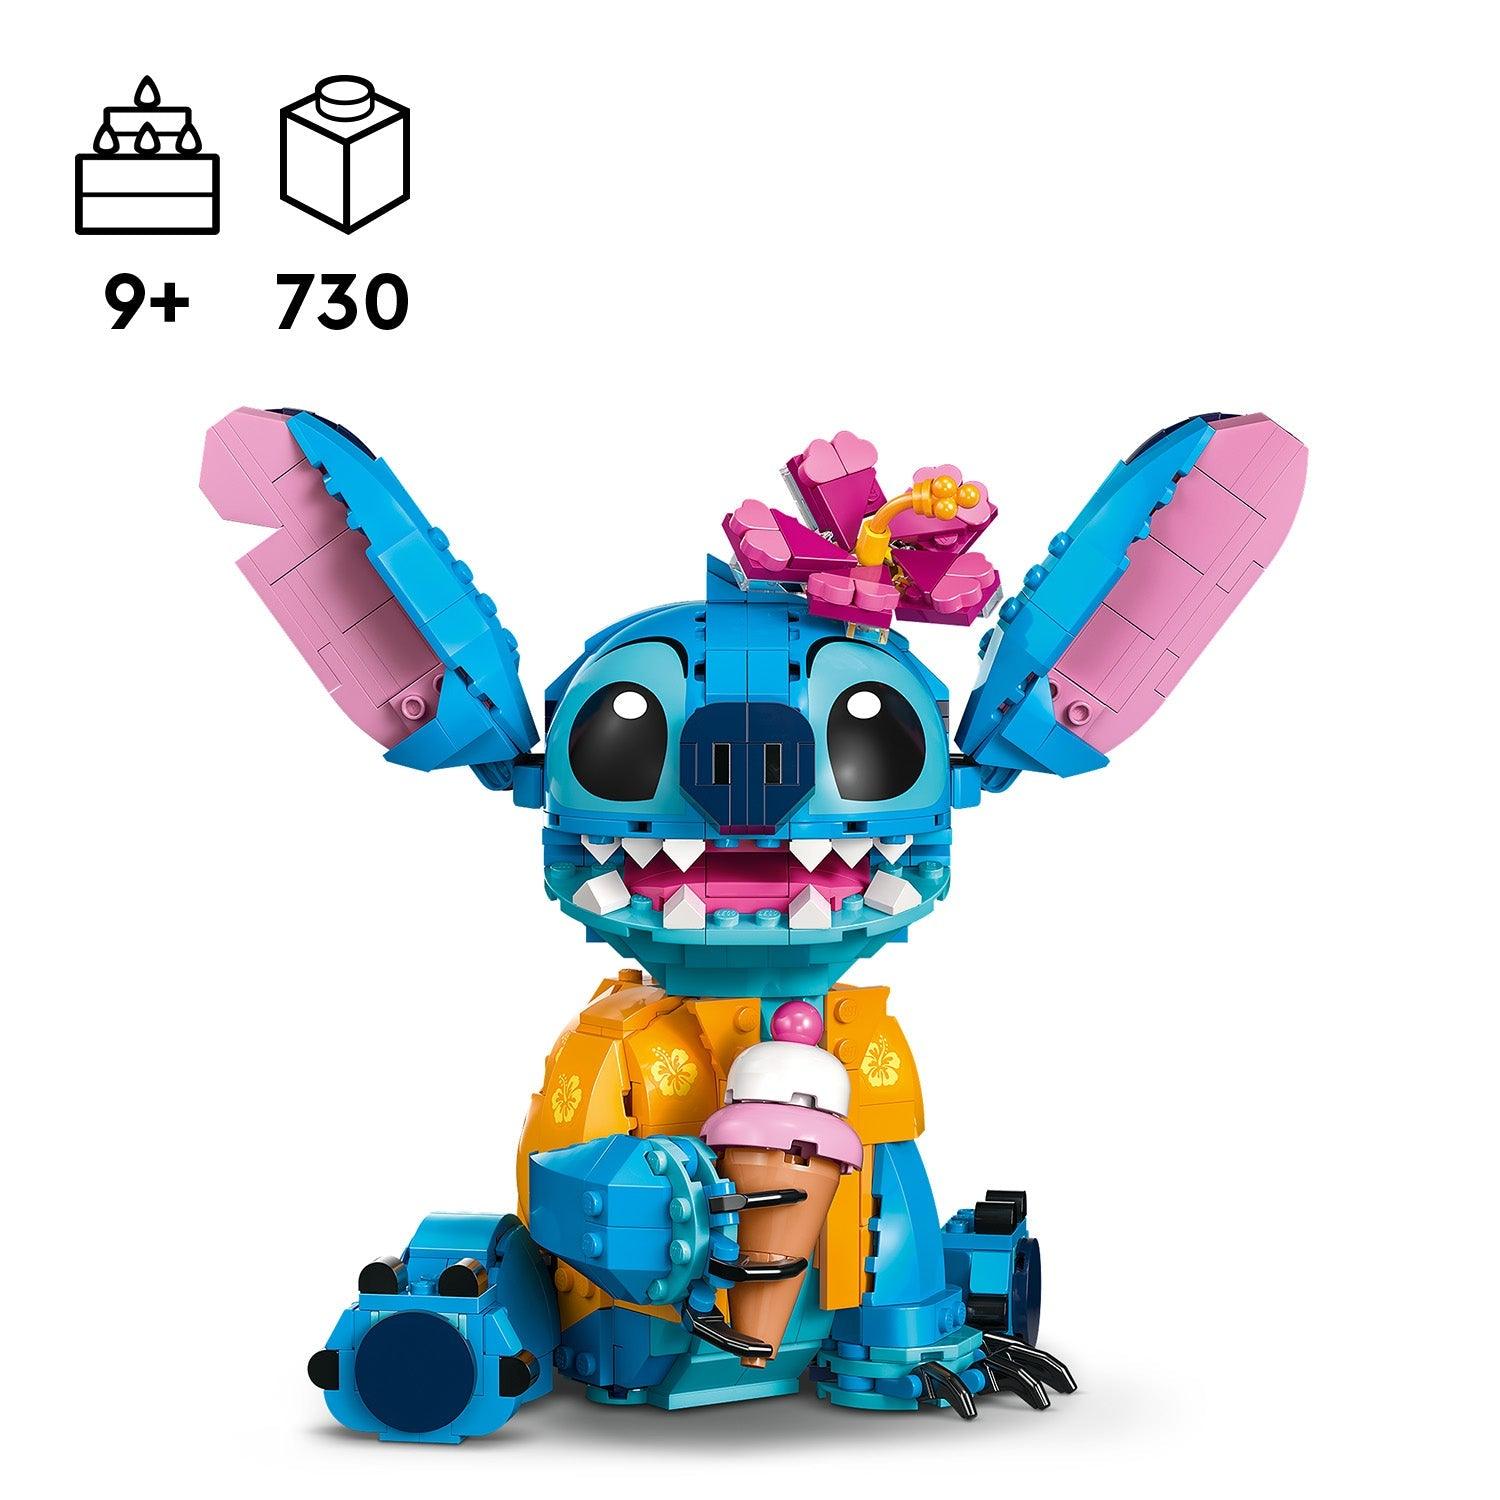 LEGO Stitch 43249 Disney LEGO Disney Classic @ 2TTOYS LEGO €. 54.99